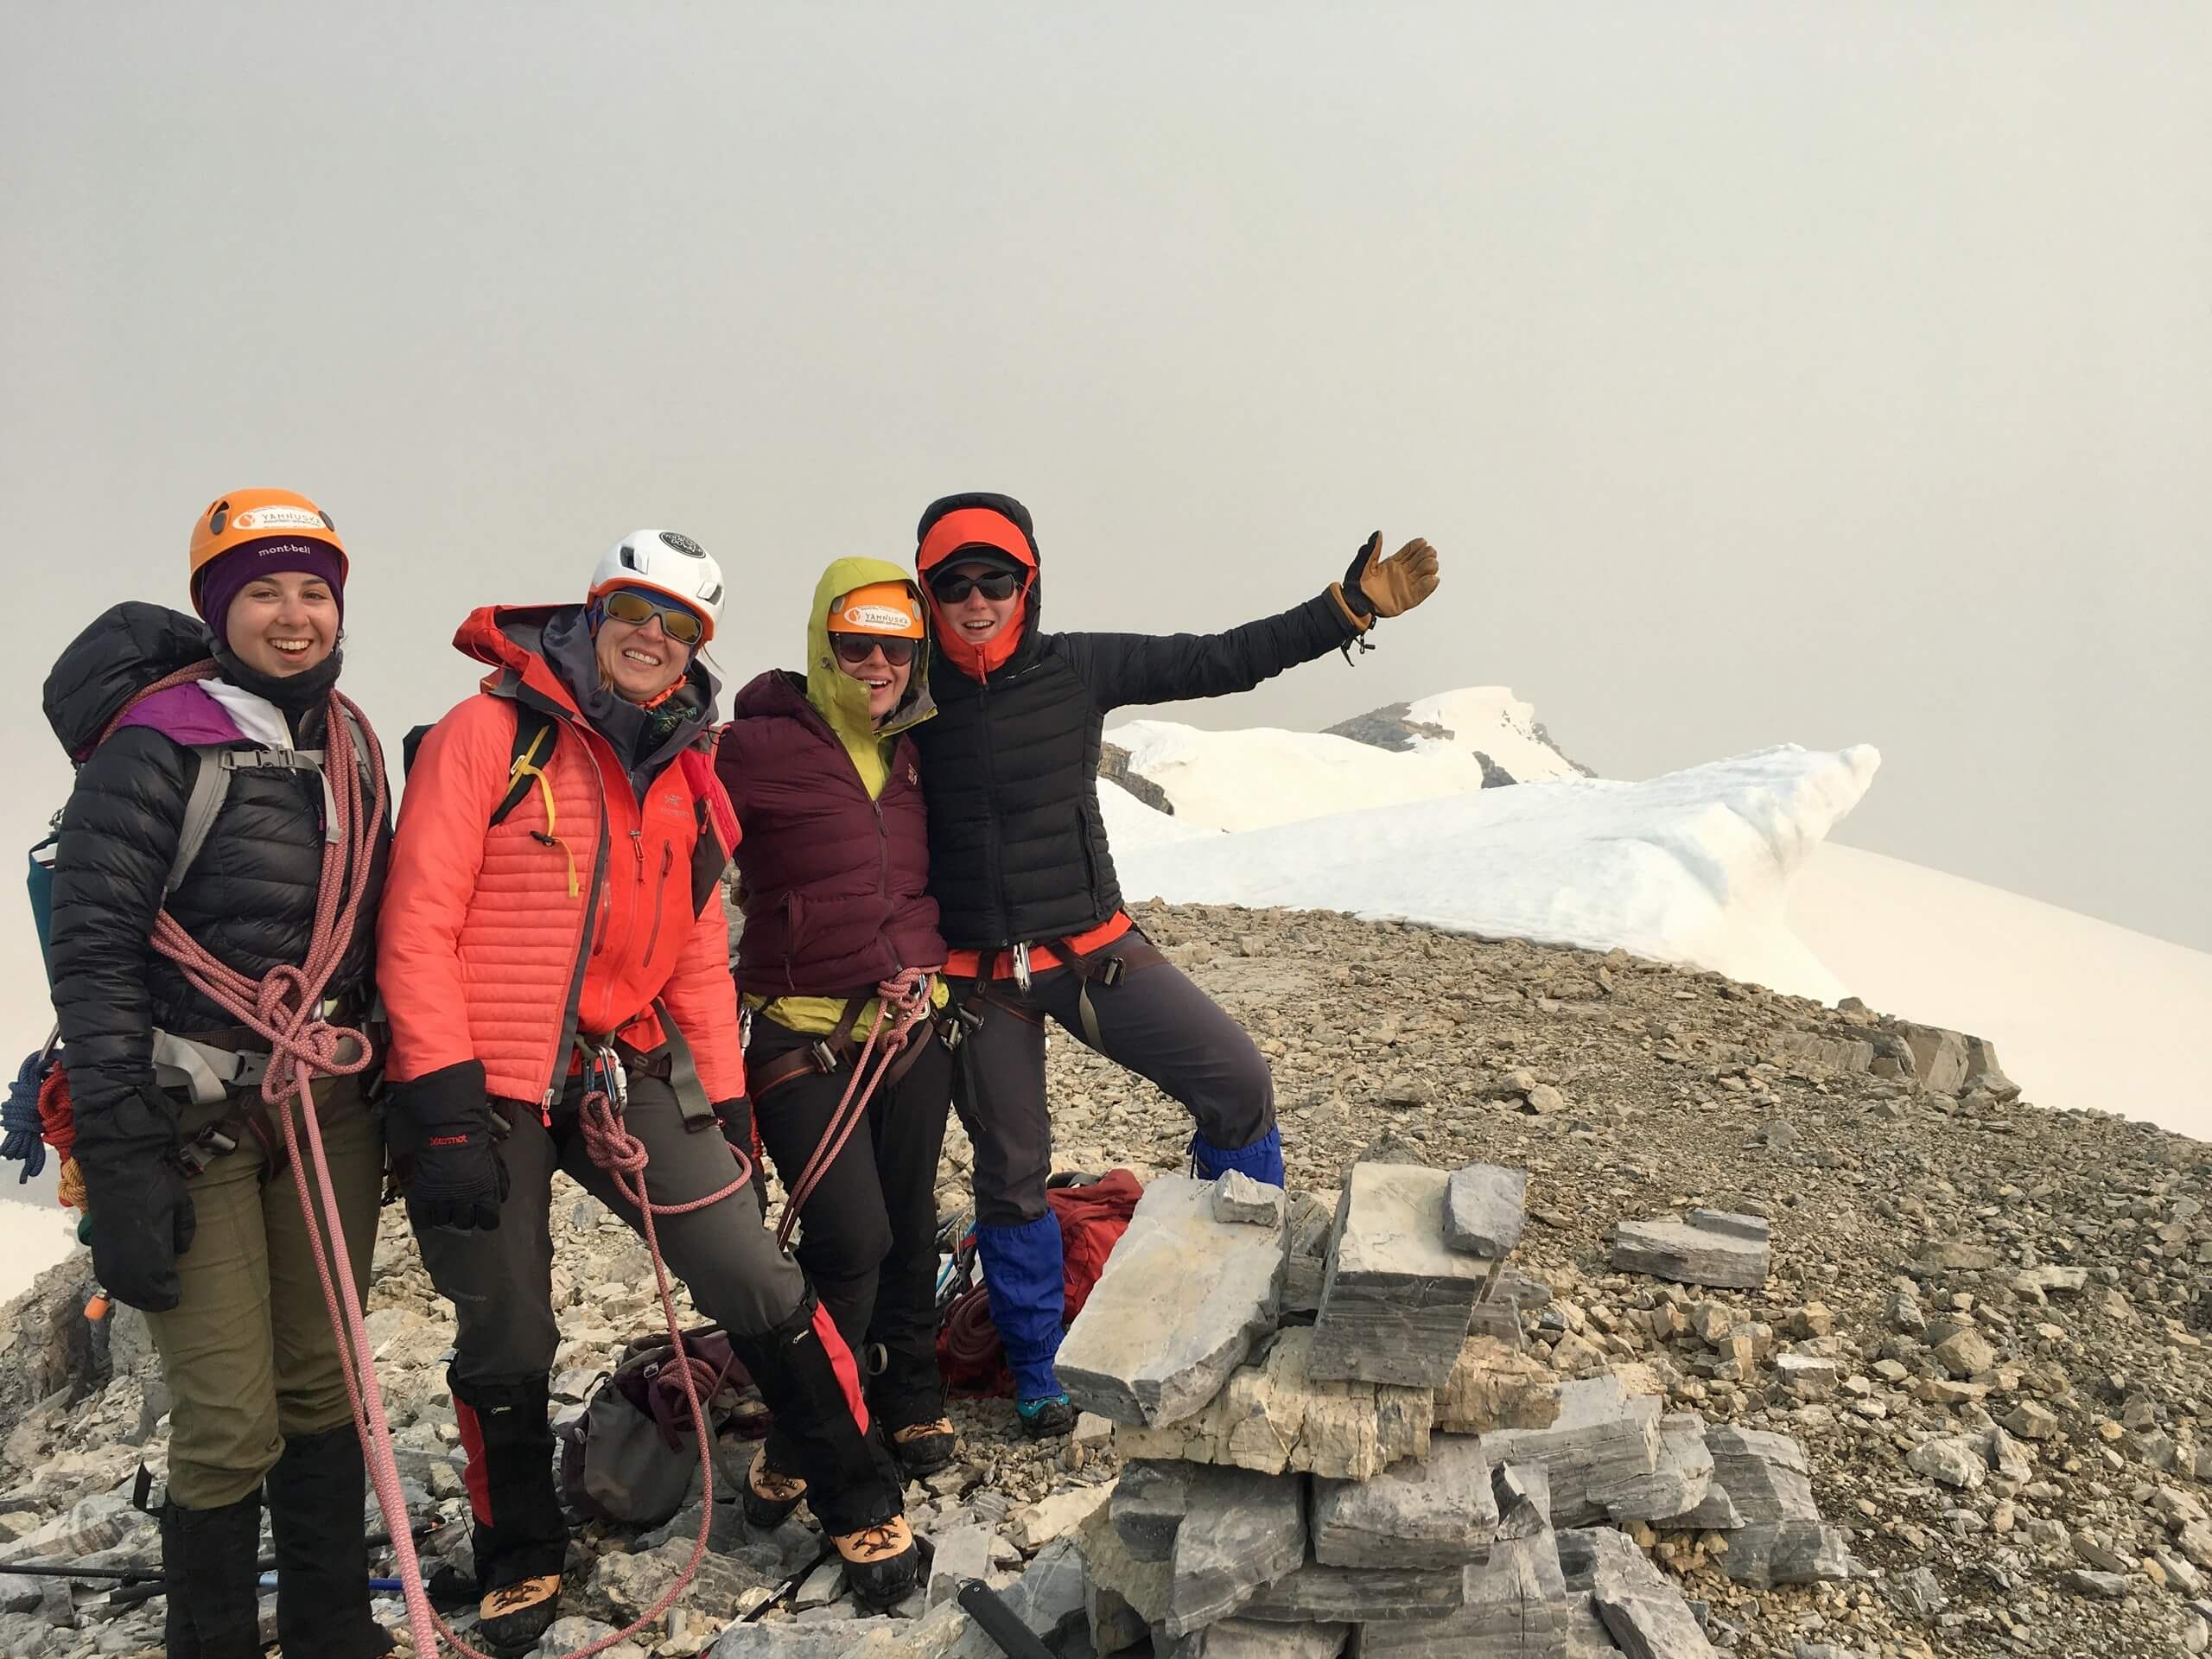 Four ladies on a mountain climing tour